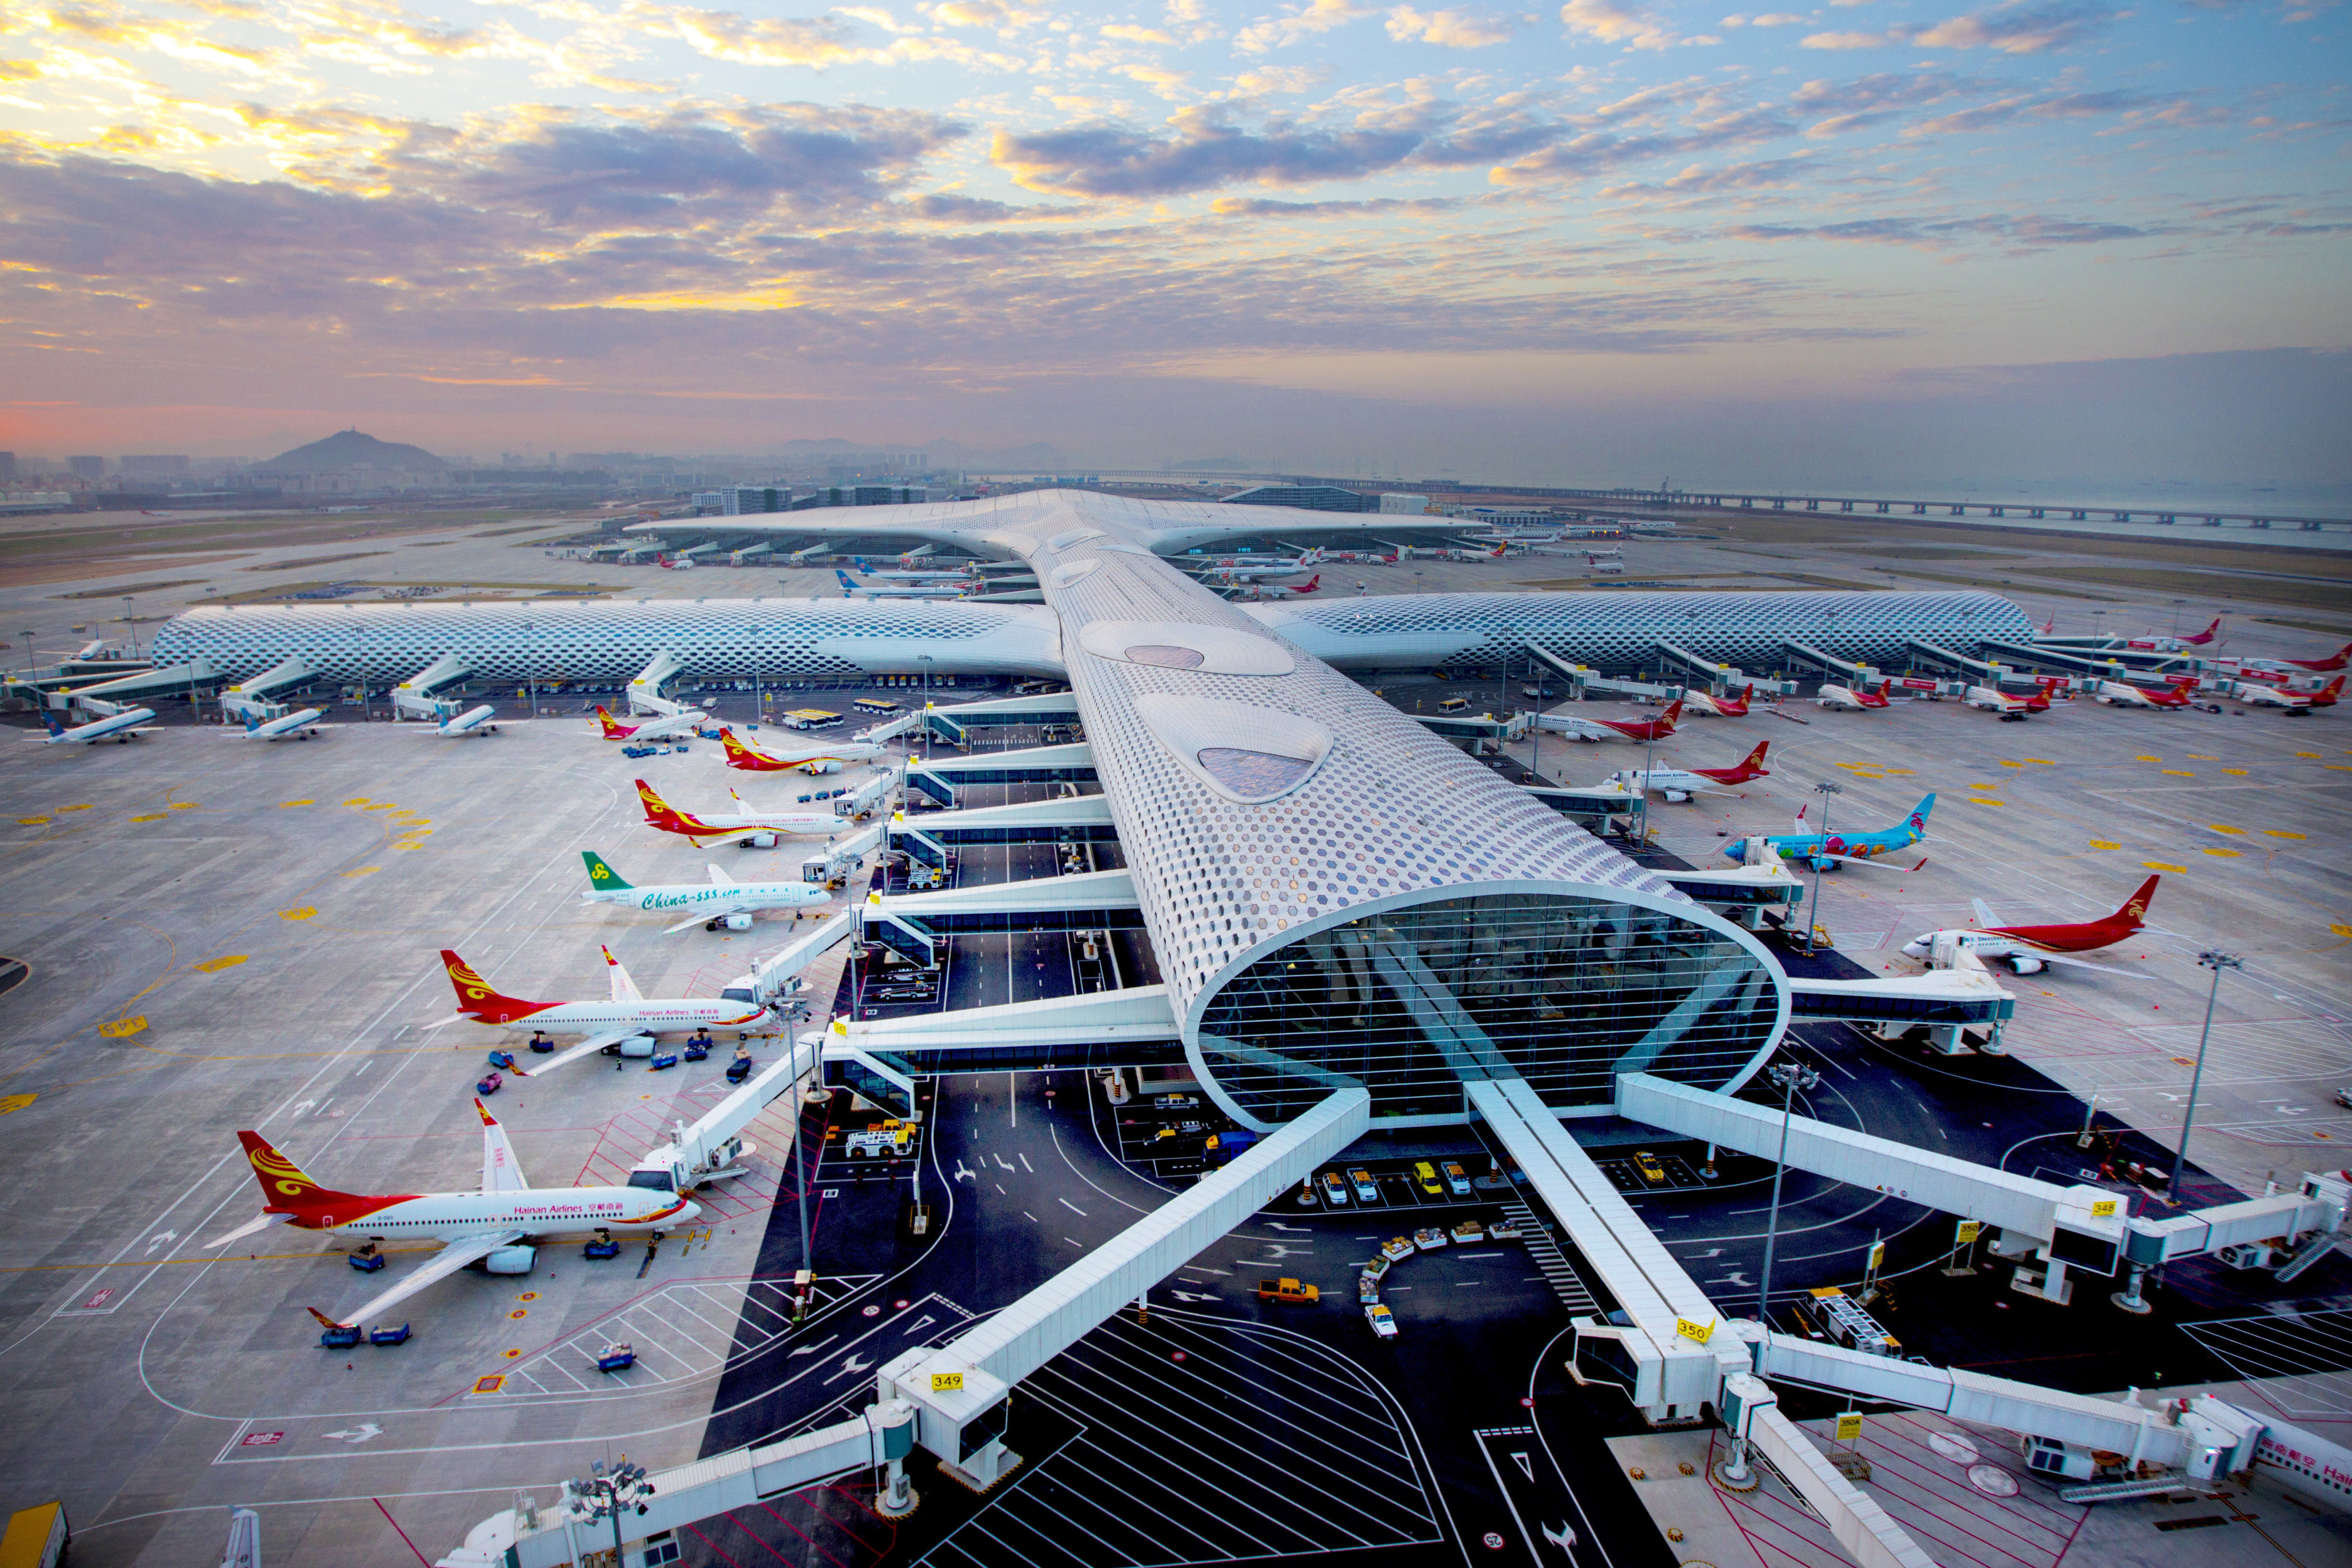 深圳机场设立合资公司,拓展经营免税业务